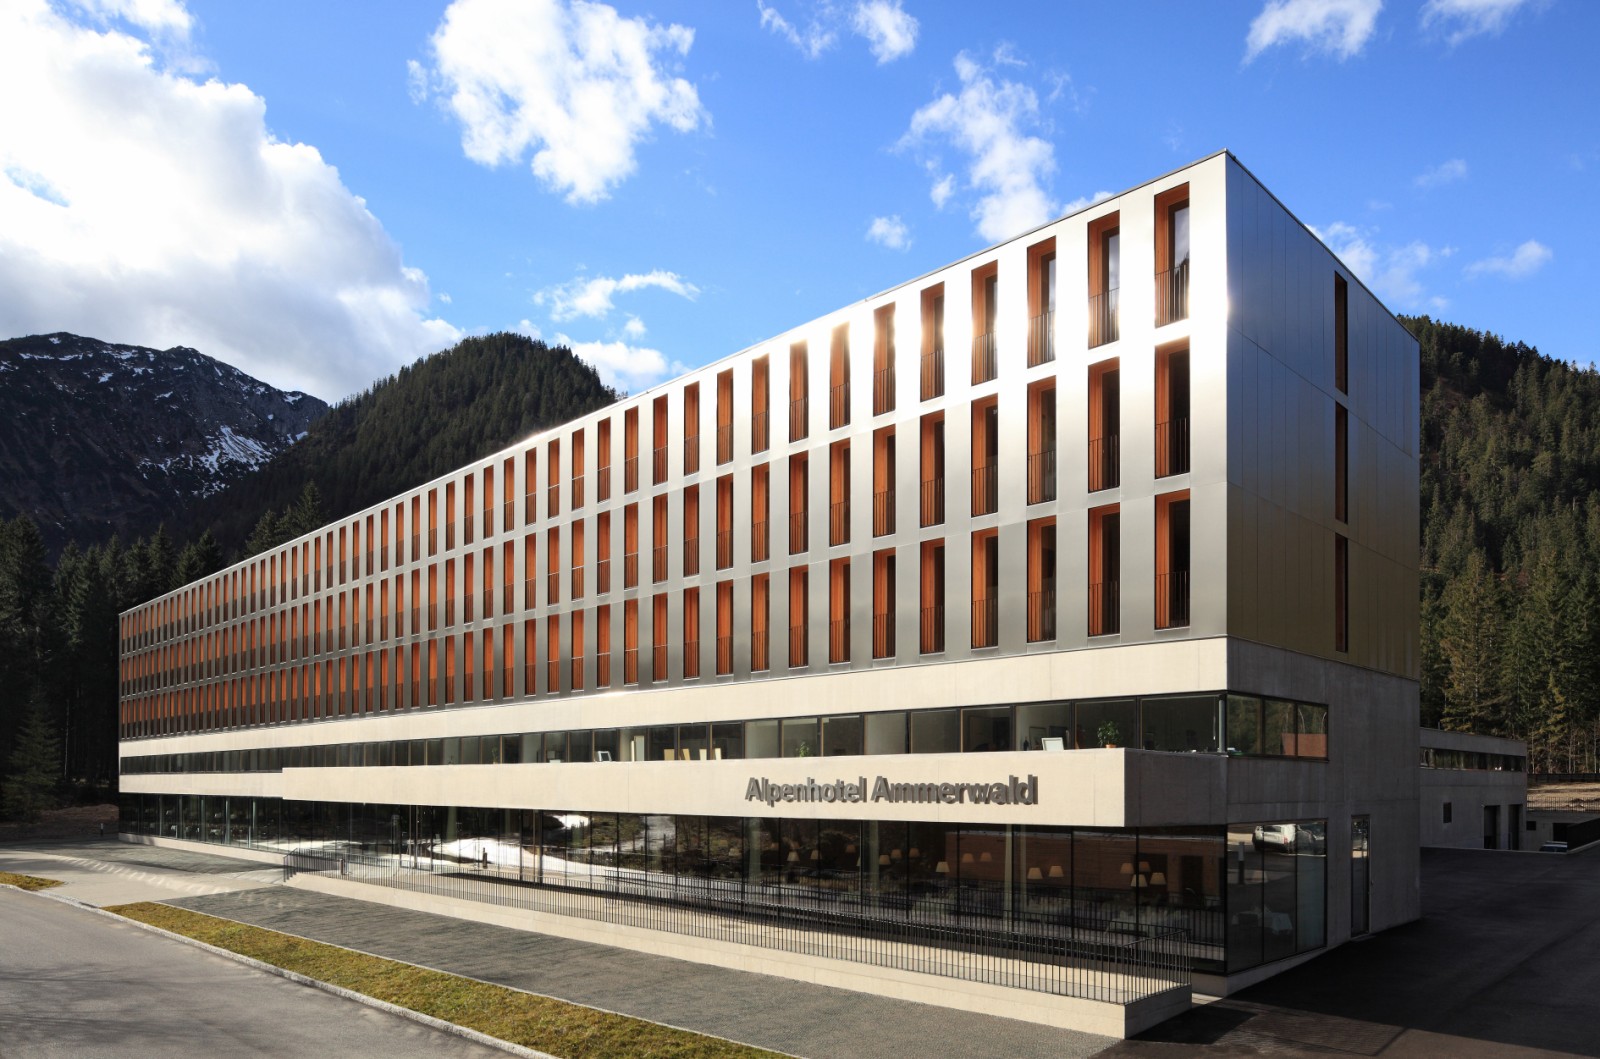 Alpenhotel ammerwald bmw group